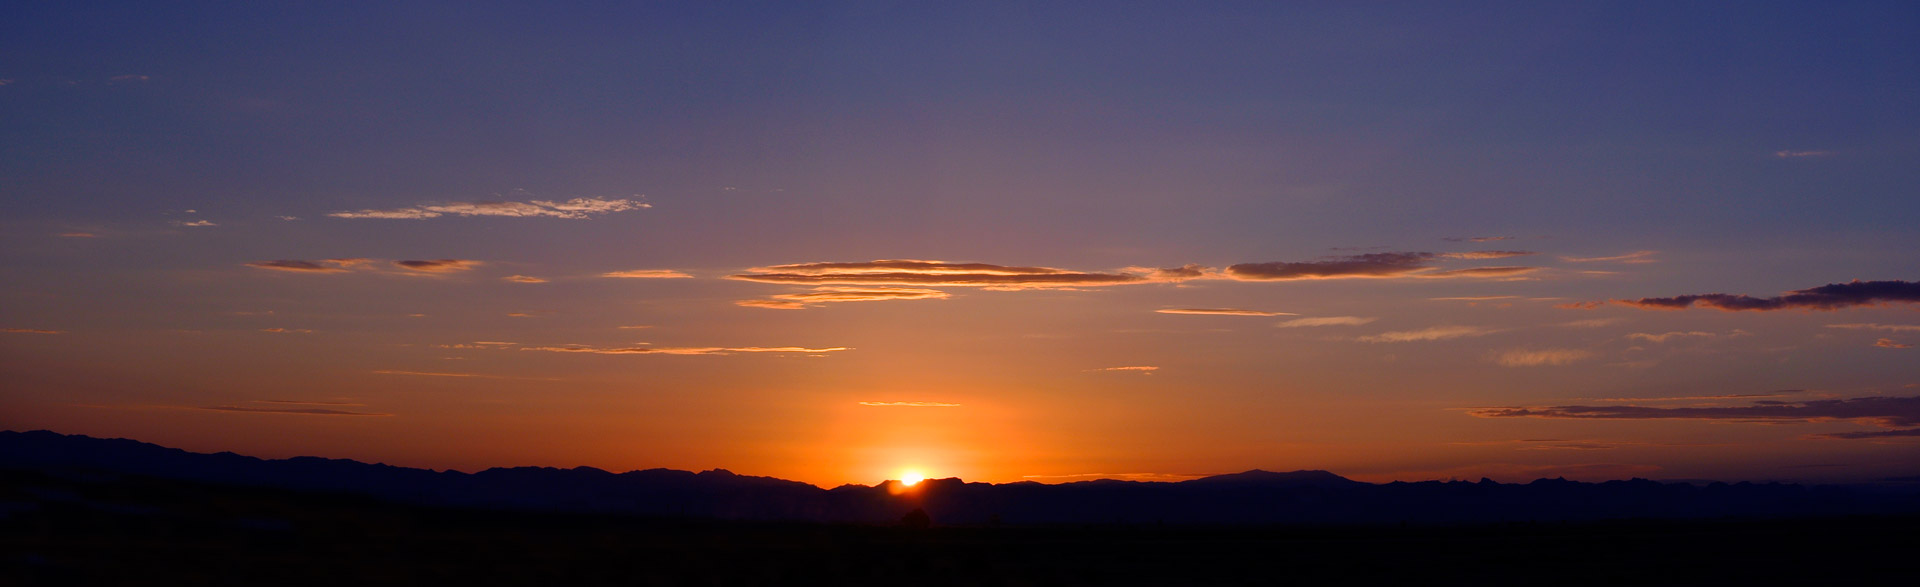 arizona sunrise mountains free photo